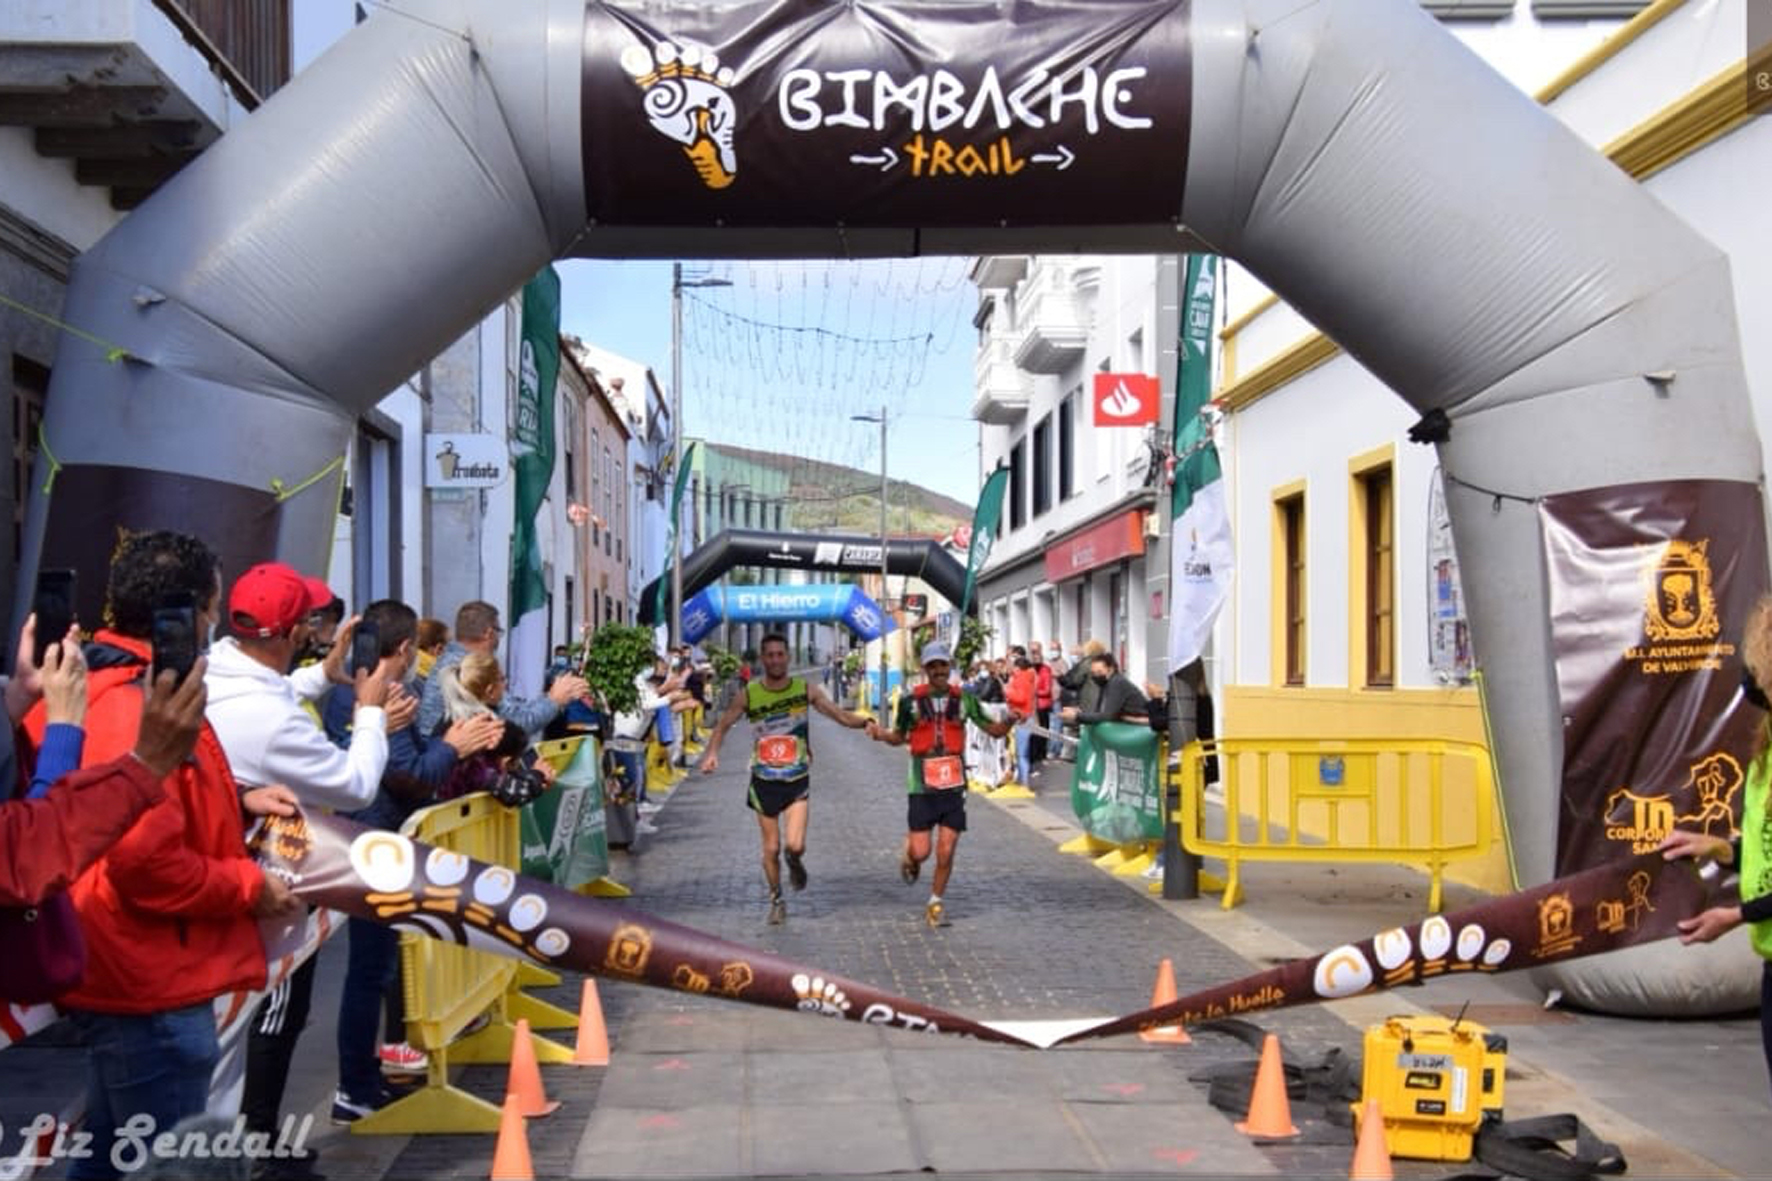 320 corredores hicieron frente al duro recorrido y la climatología adversa en la segunda edición de la Bimbache Trail